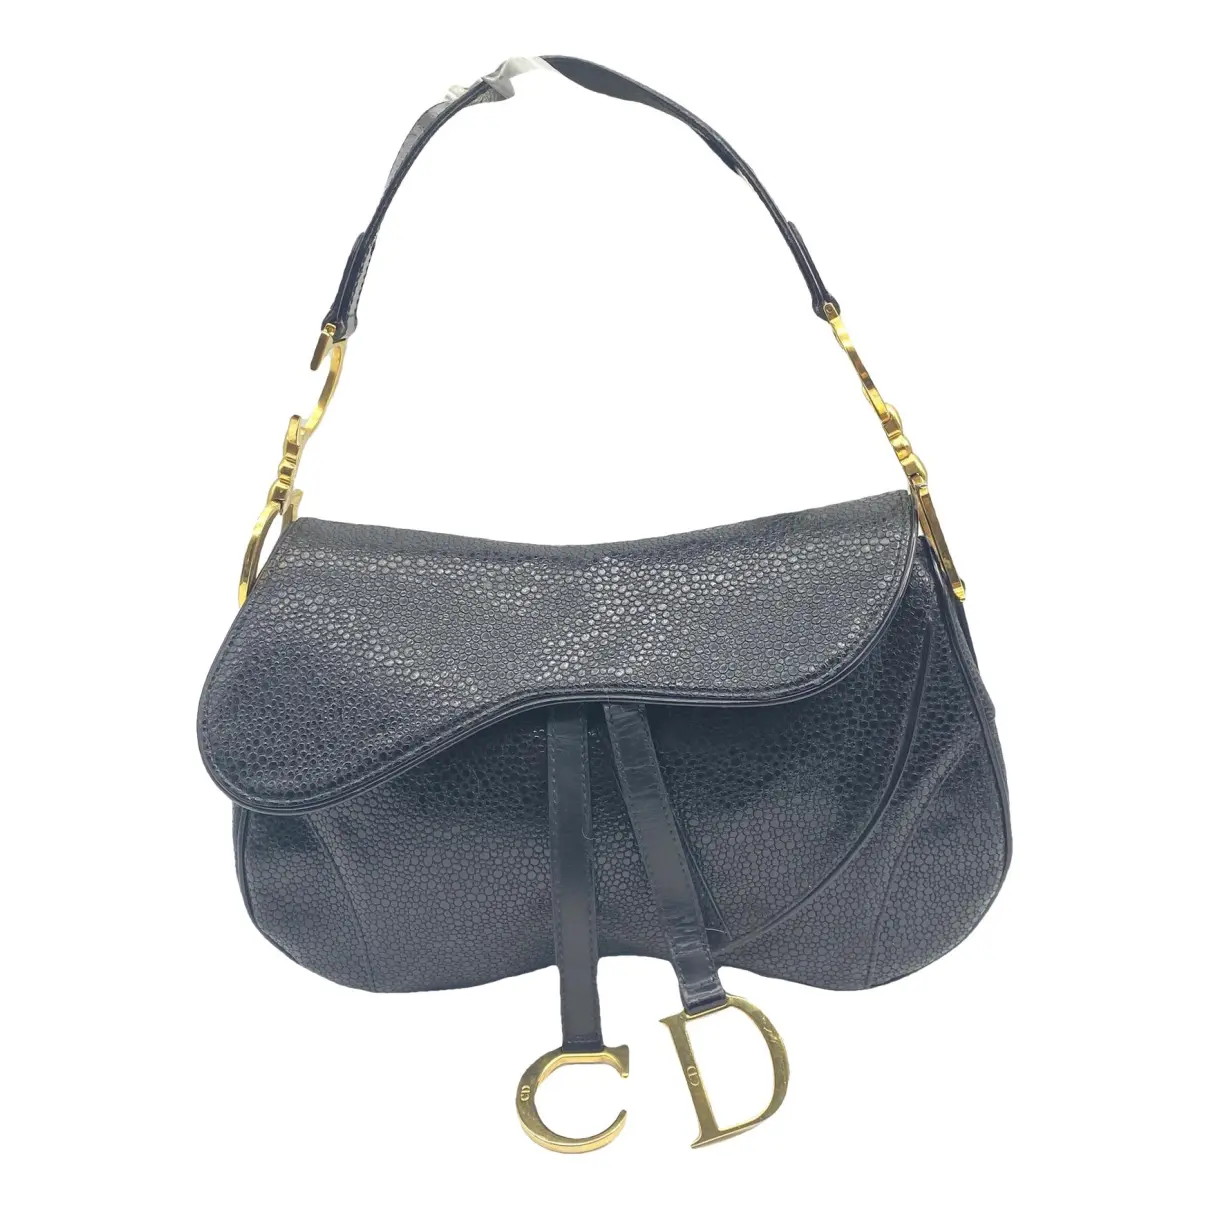 Double Saddle leather handbag